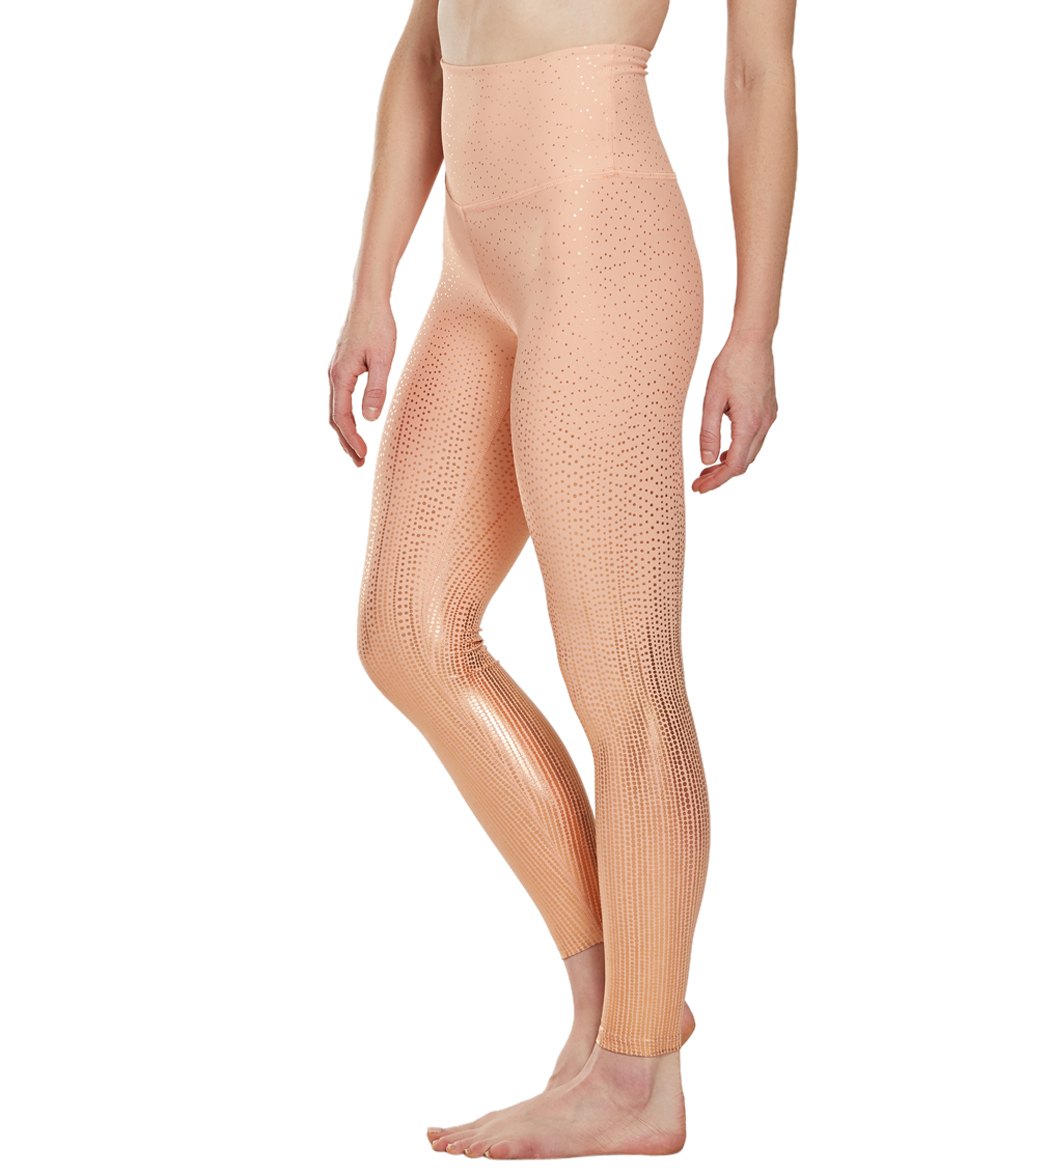 NWT Beyond Yoga Shimmer Essential Long Leggings - M, Black/Silver